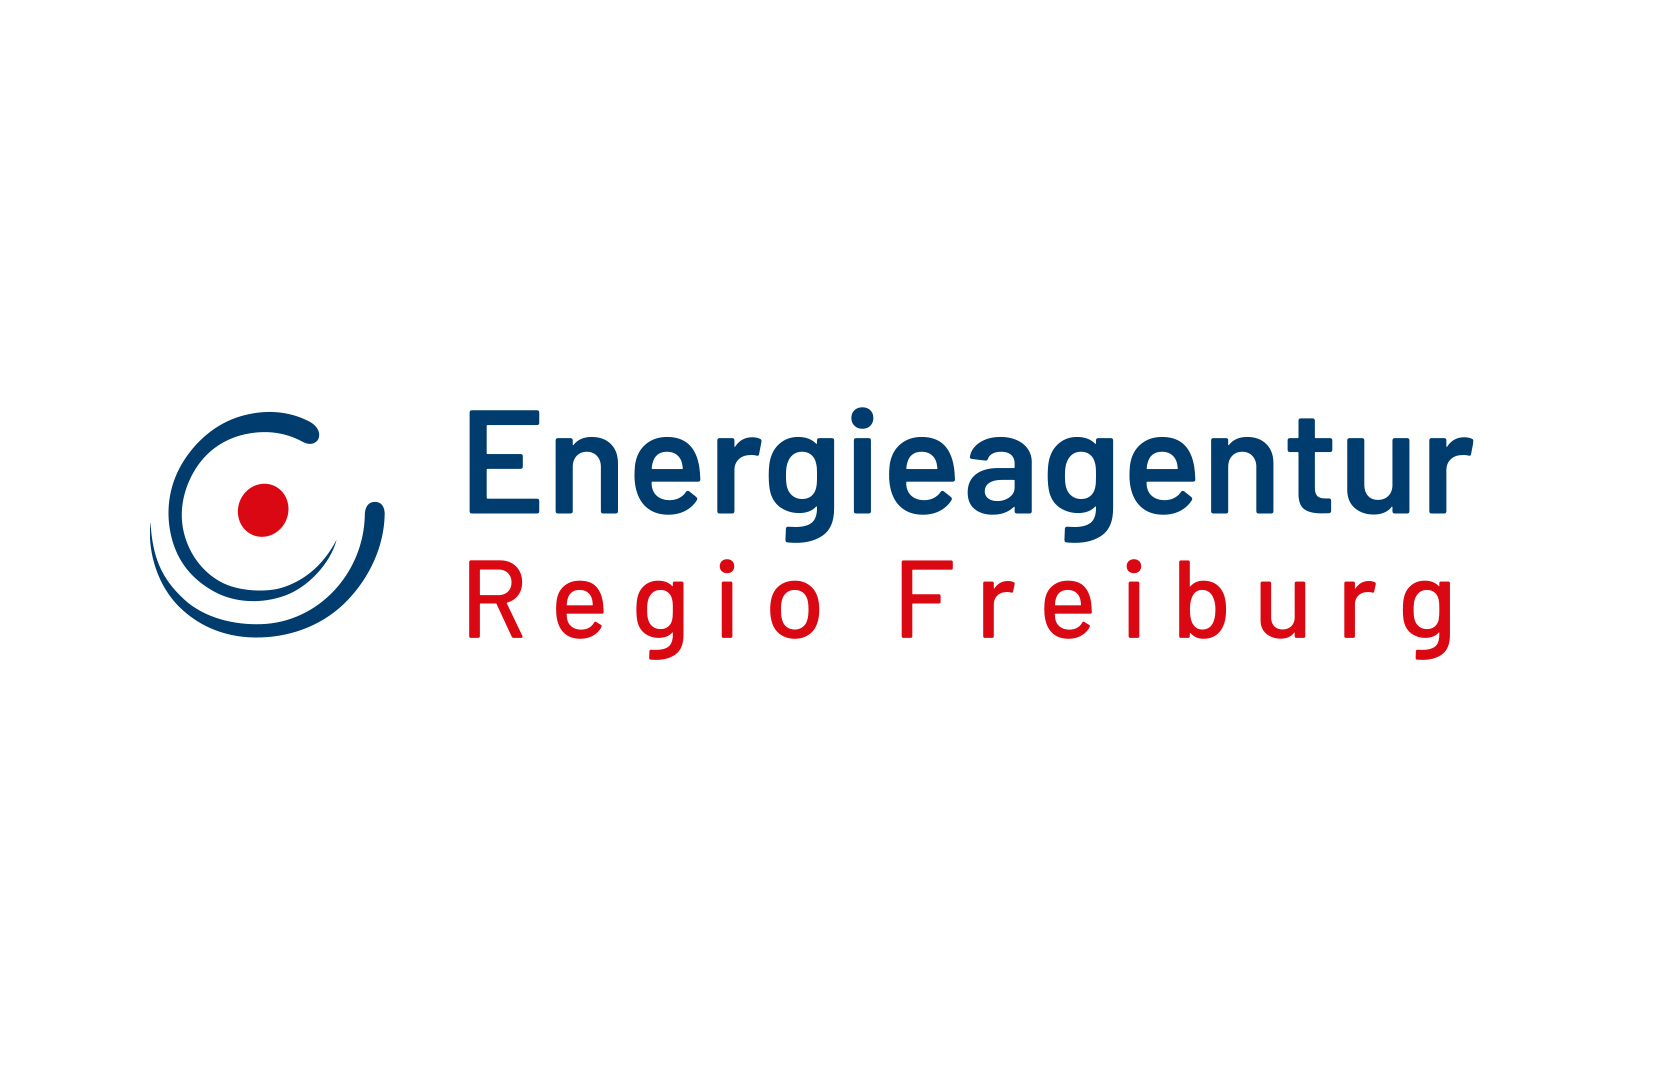 (c) Energieagentur-regio-freiburg.eu